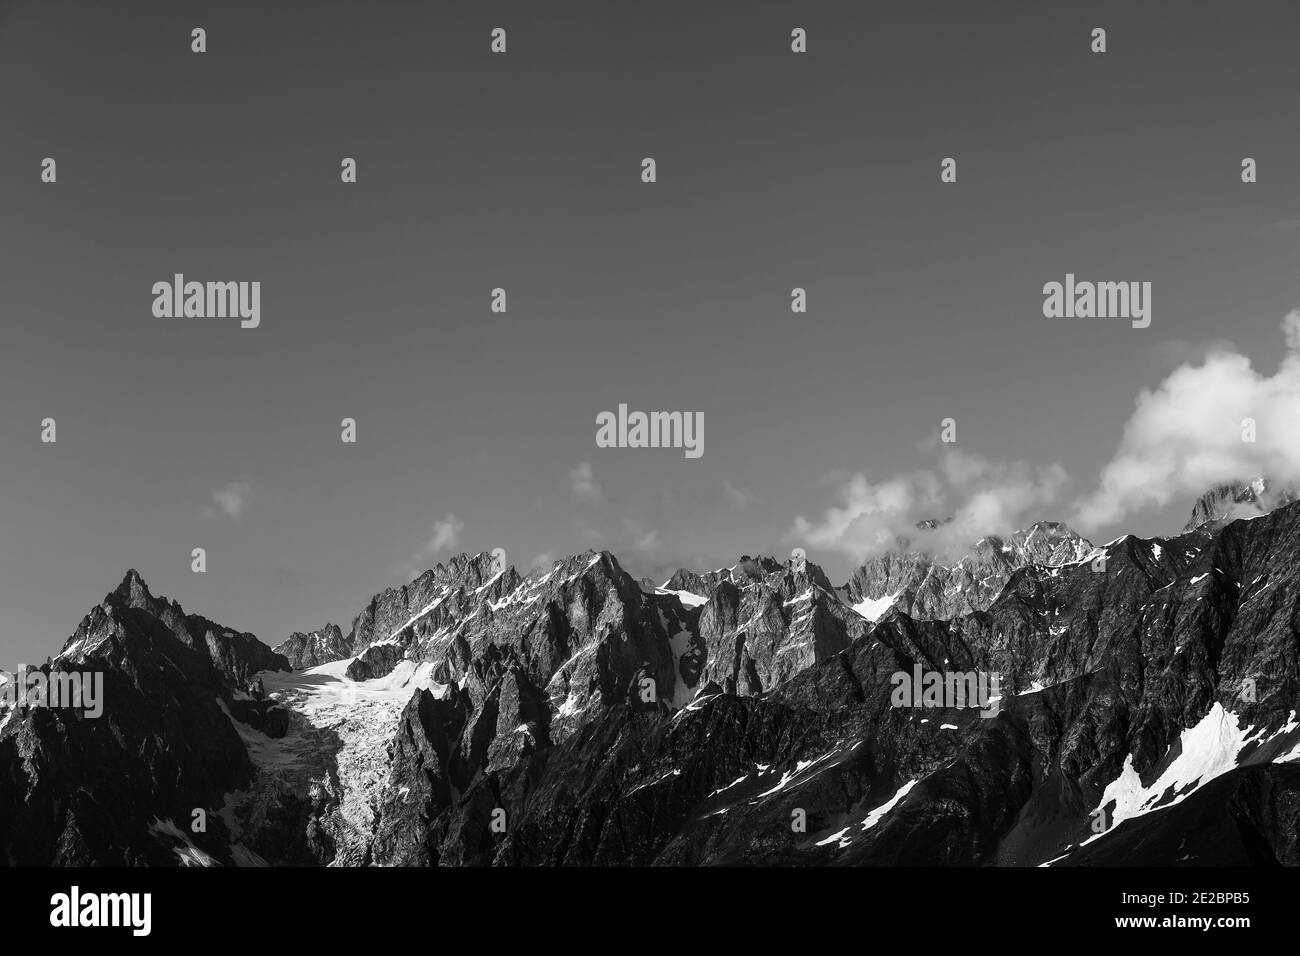 Hautes montagnes ensoleillées avec neige et glacier. Montagnes du Caucase. Géorgie, région de Svanetia en été. Emplacement distant. Paysage noir et blanc. Banque D'Images